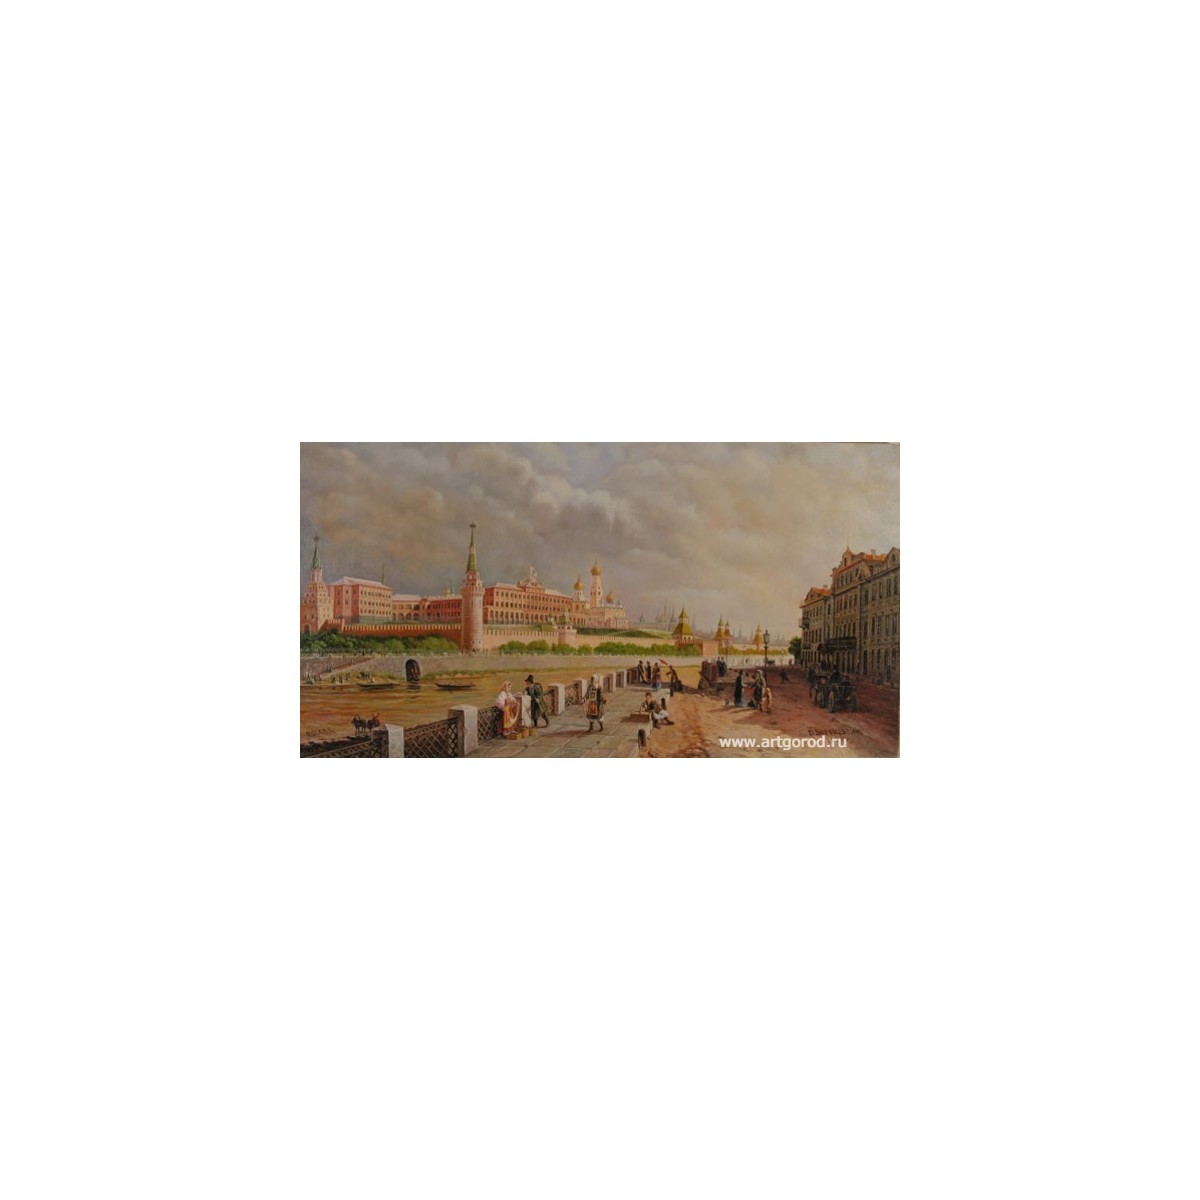 копия картины П.Верещагина "Вид Московского Кремля со стороны Английской набережной"